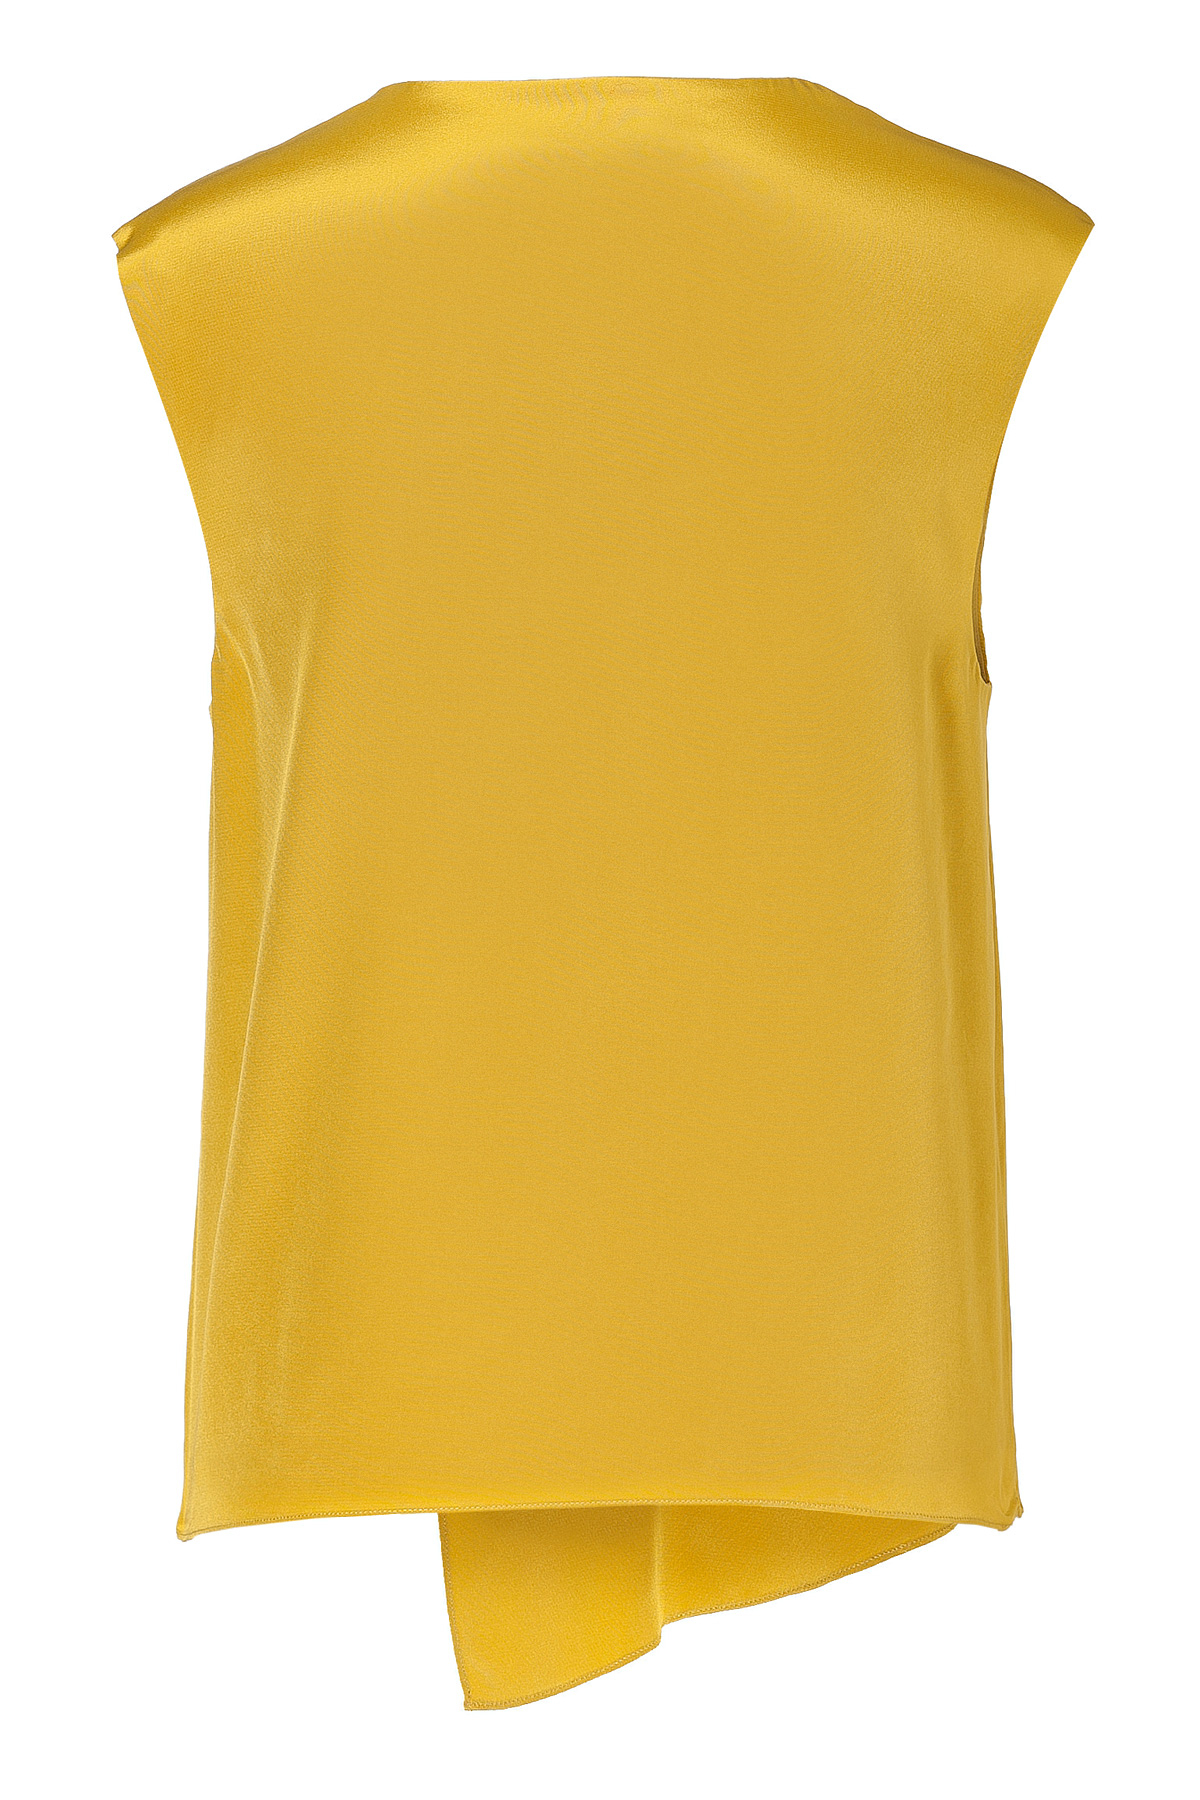 Lyst - Tibi Mustard Silk Top in Yellow